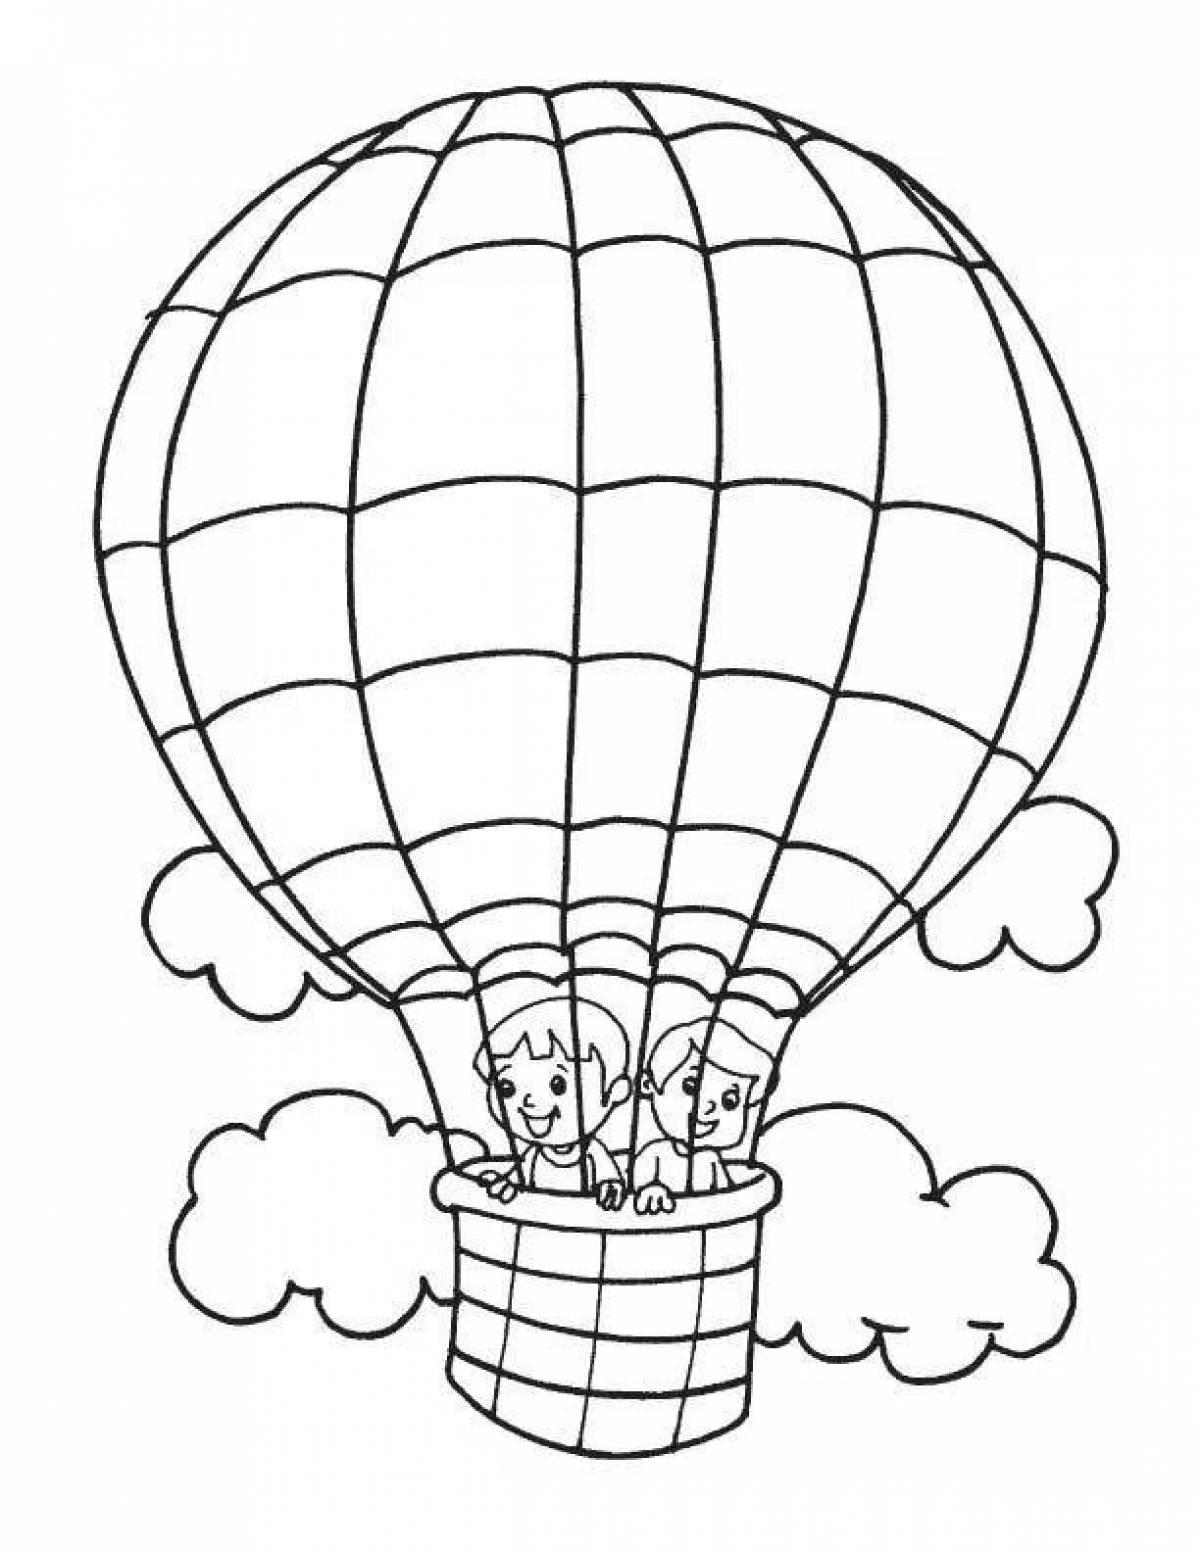 Увлекательная раскраска с воздушными шарами для детей